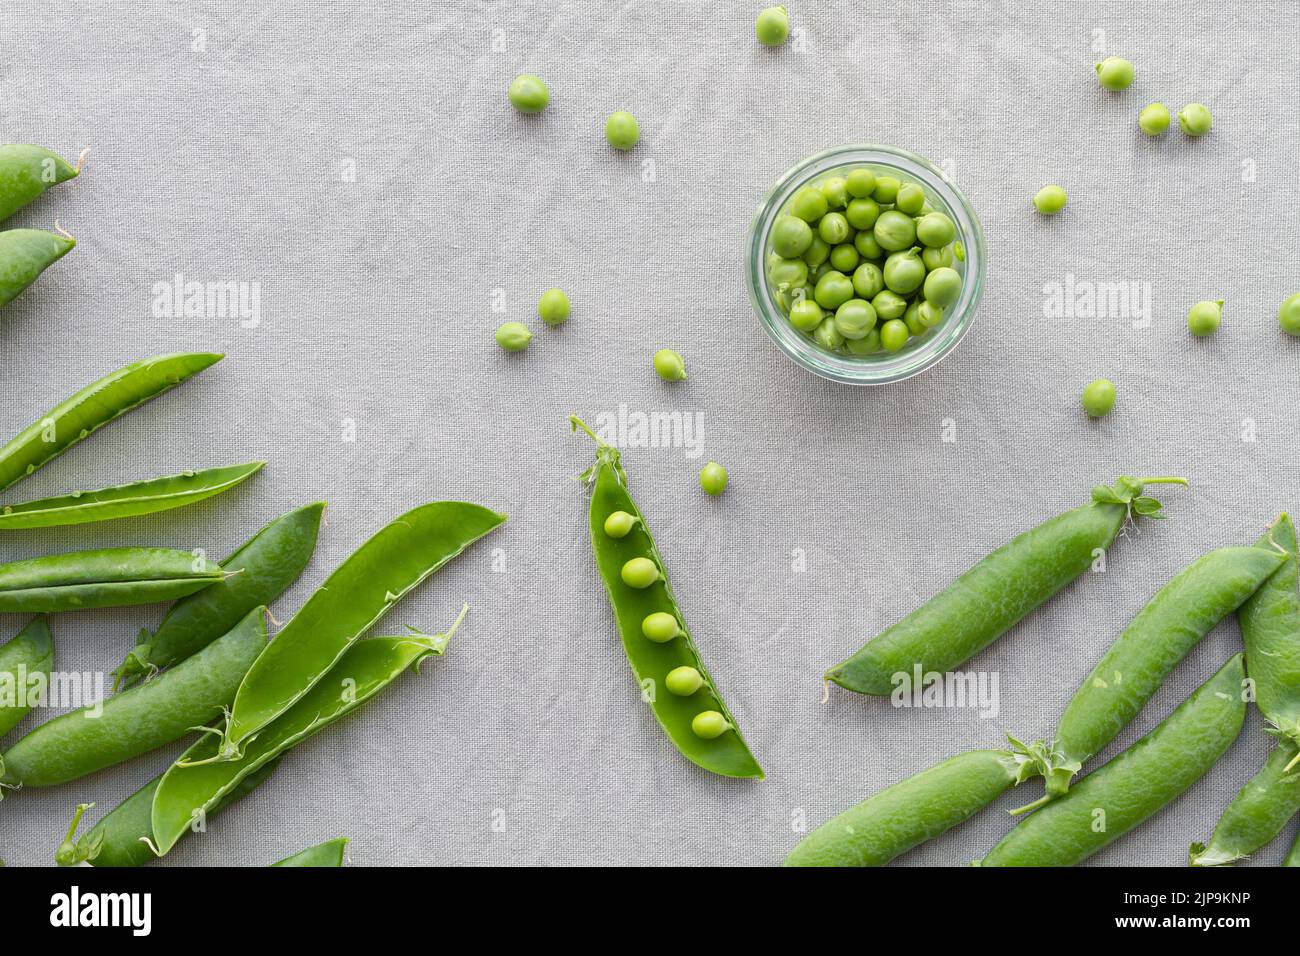 peeling, pea family, pea, pea families, peas Stock Photo